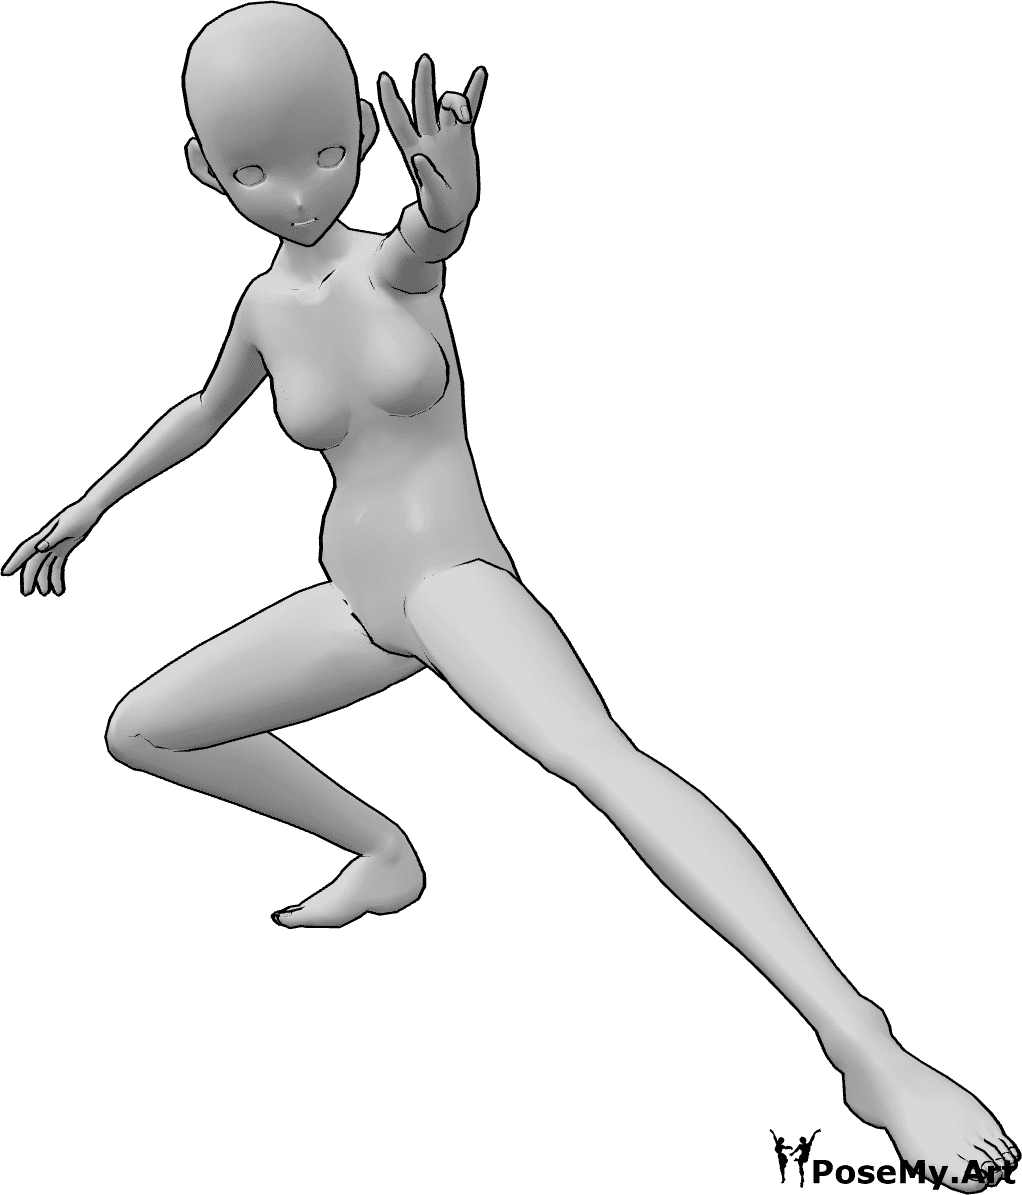 Referência de poses- Pose de lançamento de feitiço de anime - A mulher anime está agachada e lança um feitiço com a mão esquerda